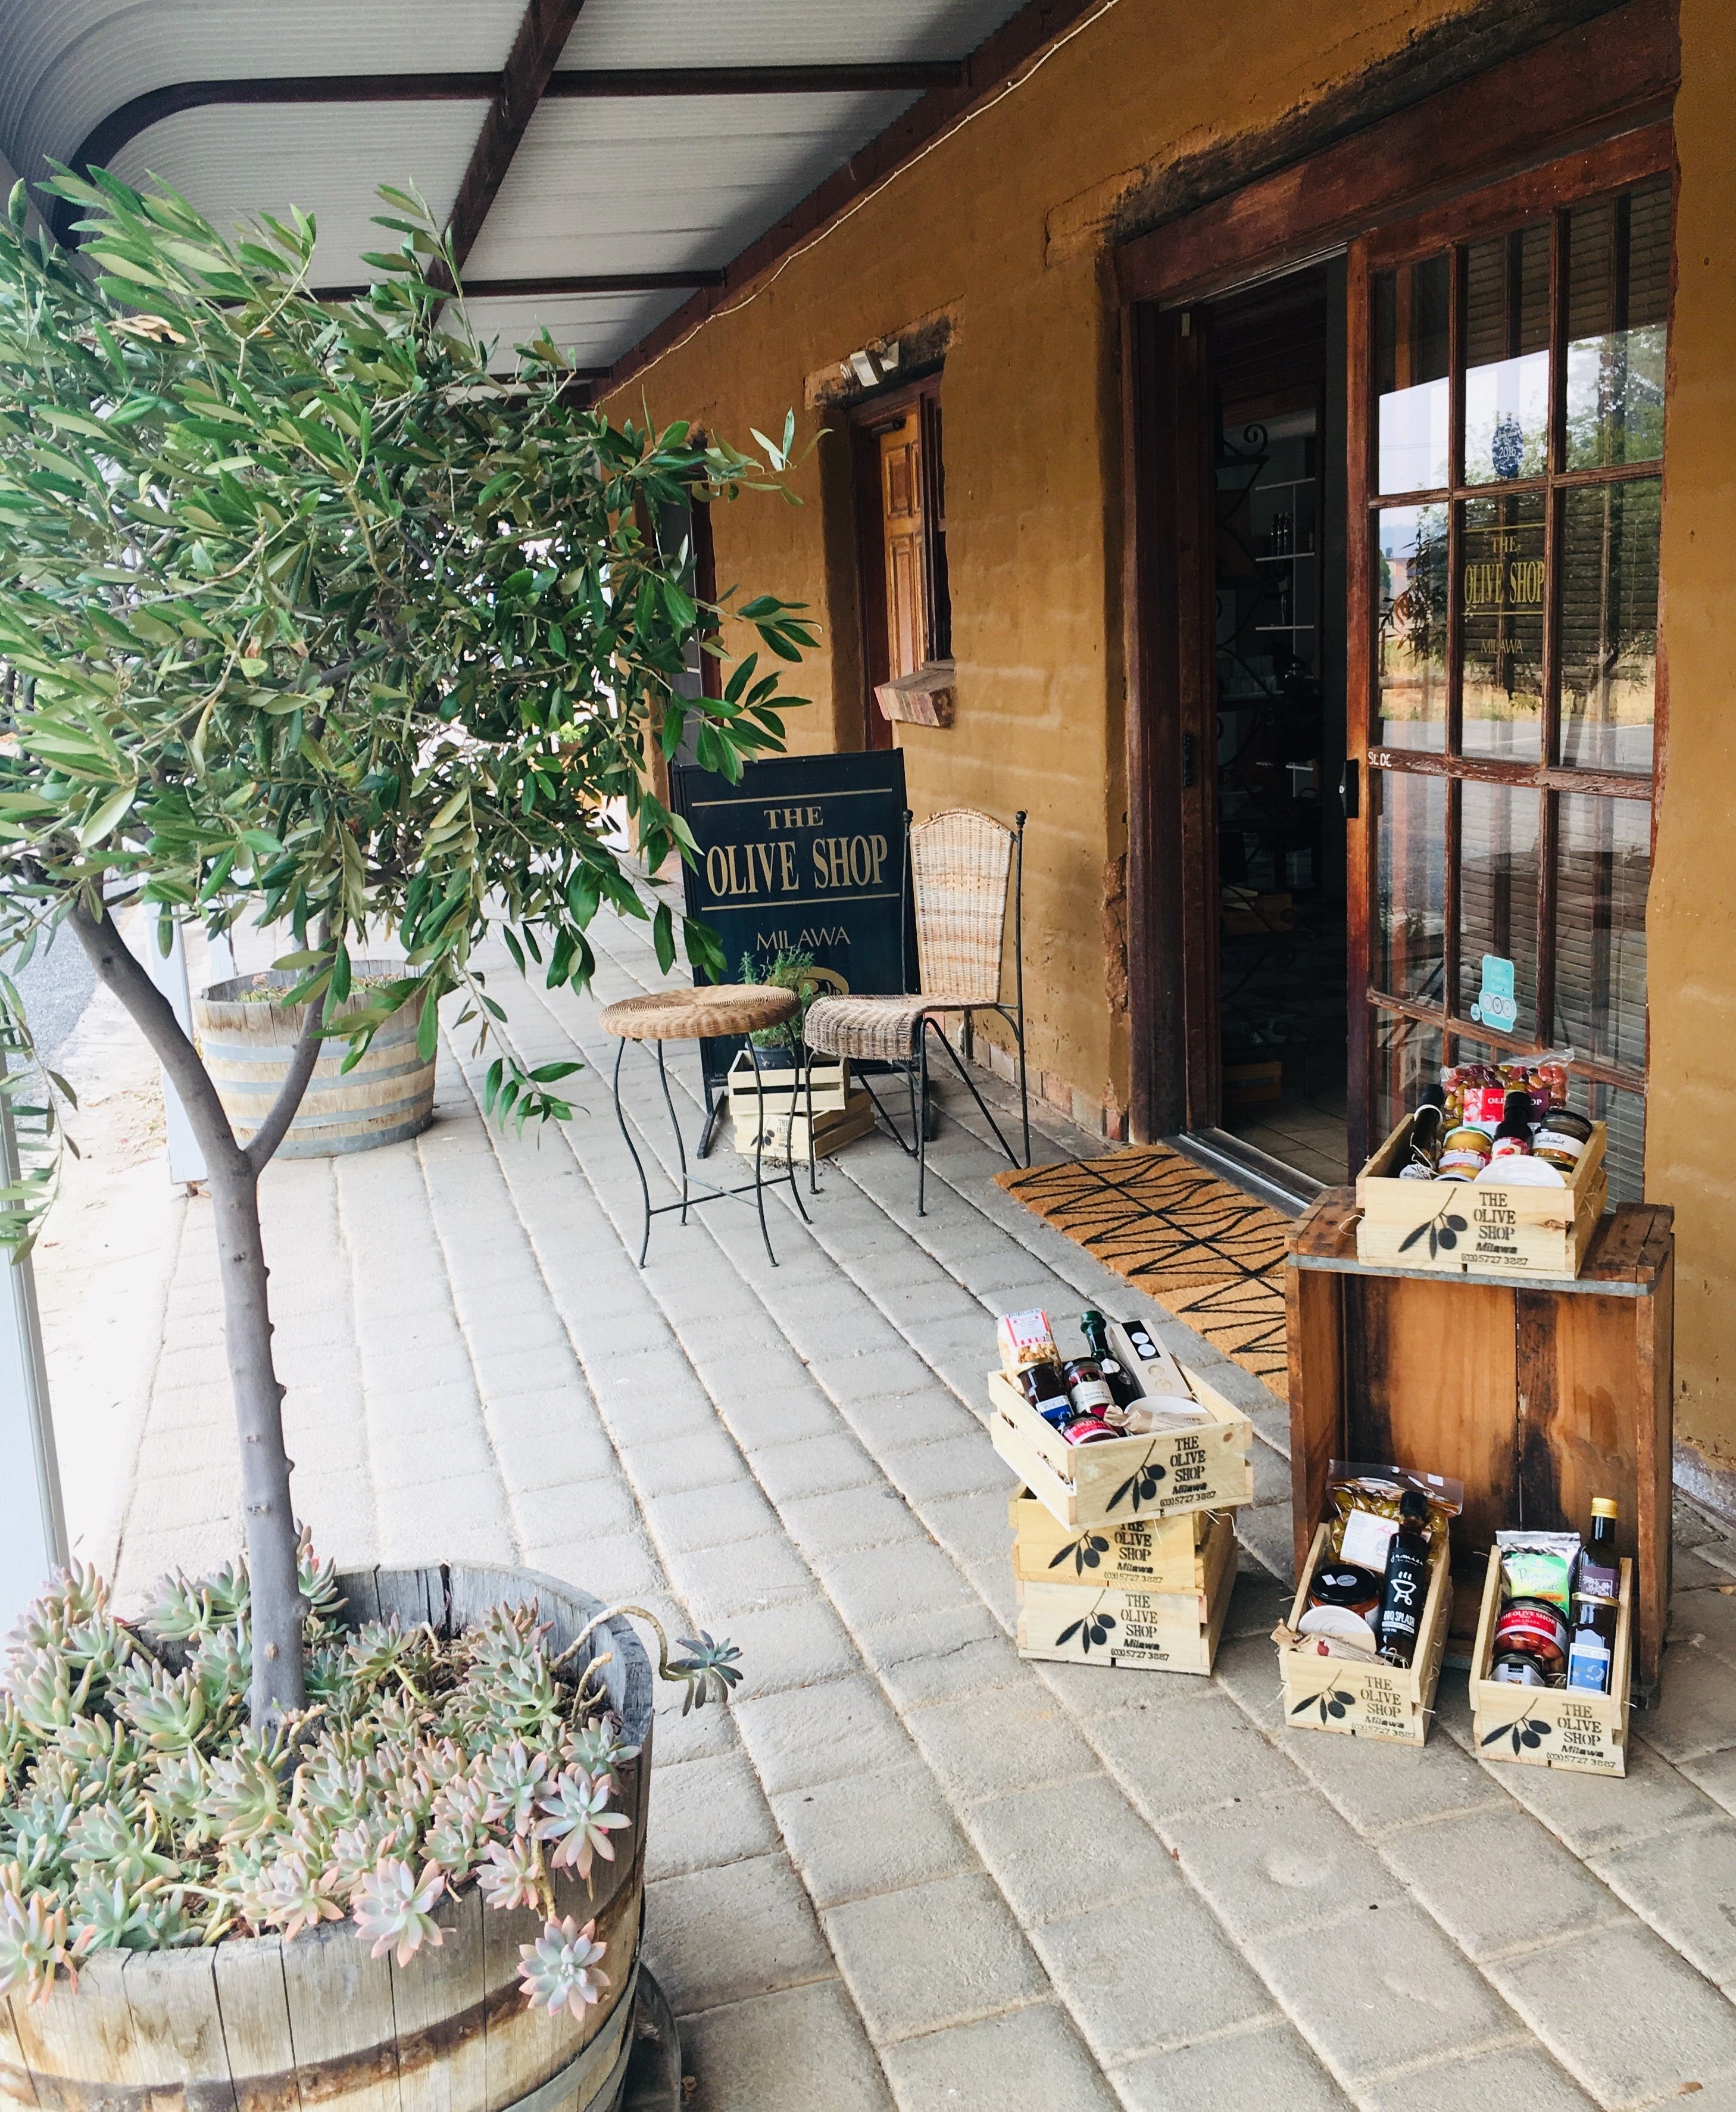 The Olive Shop - Milawa - Accommodation Sunshine Coast